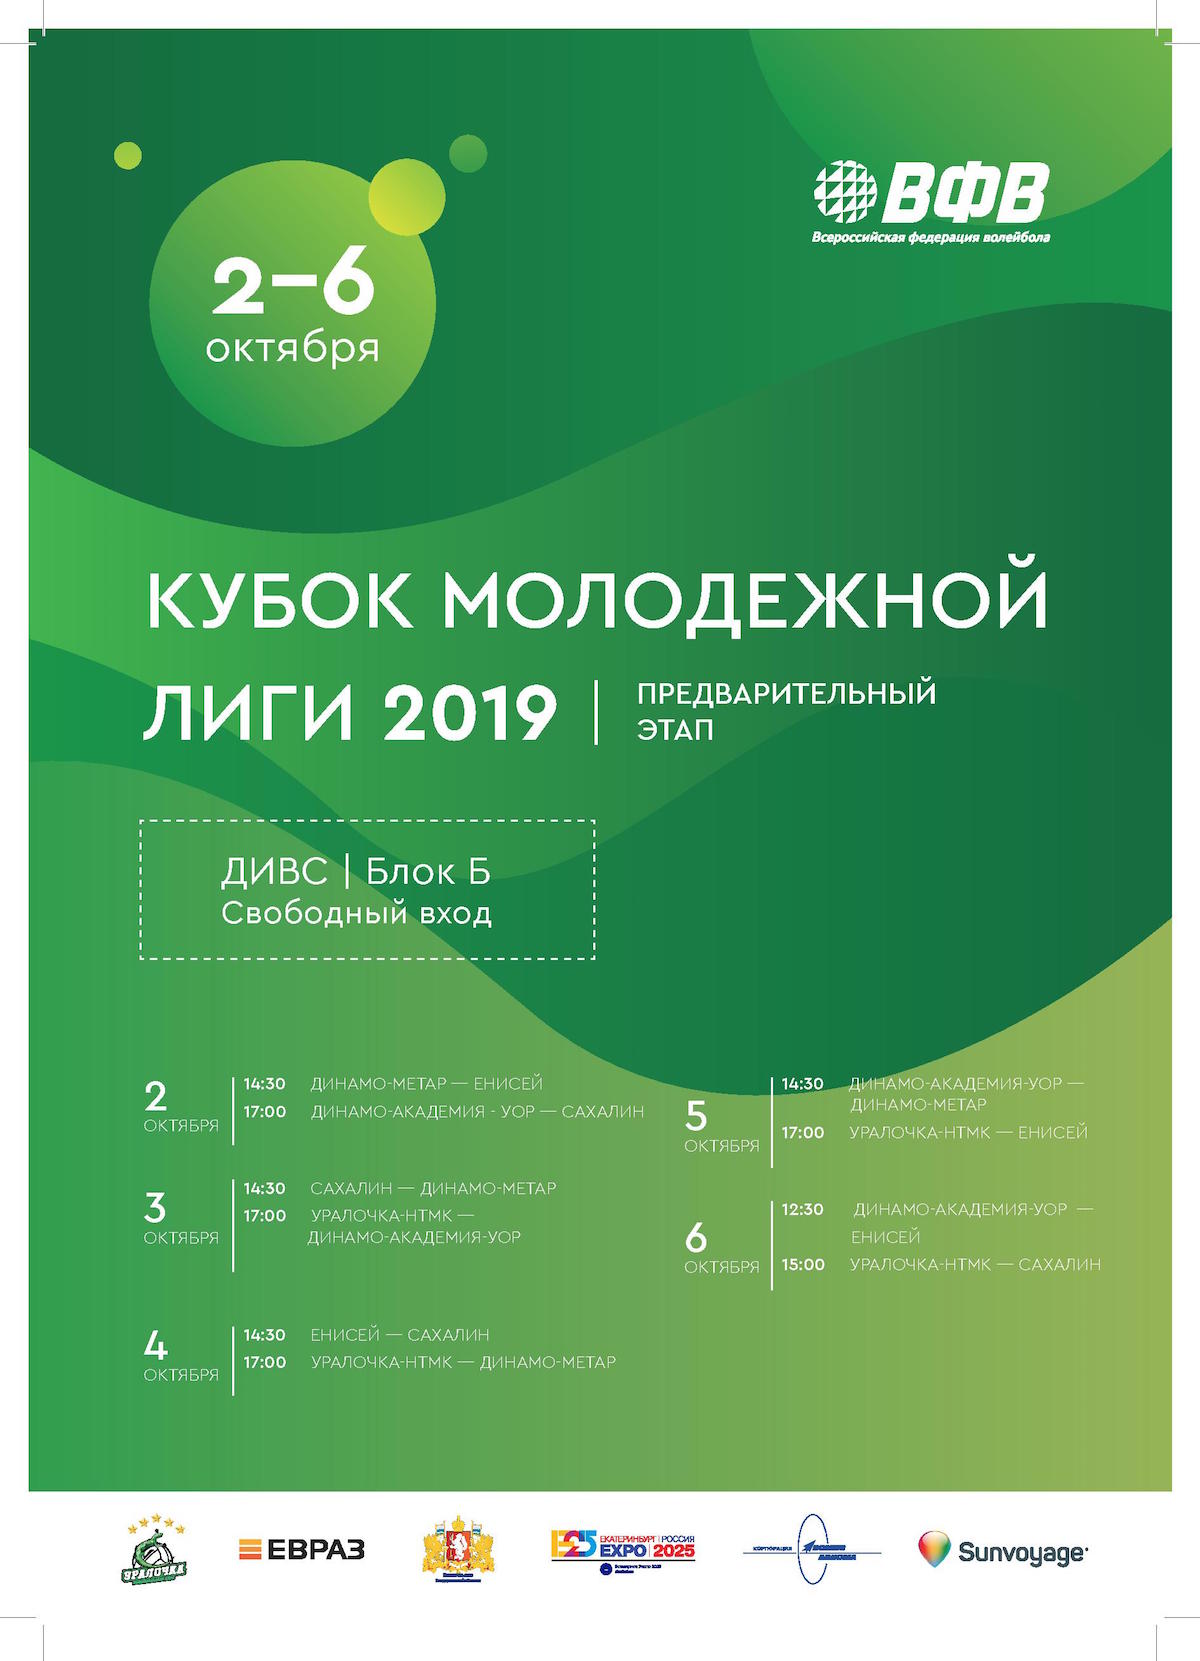 Предварительный этап Кубка Молодежной Лиги 2019 Екатеринбург, 2 – 6 октября